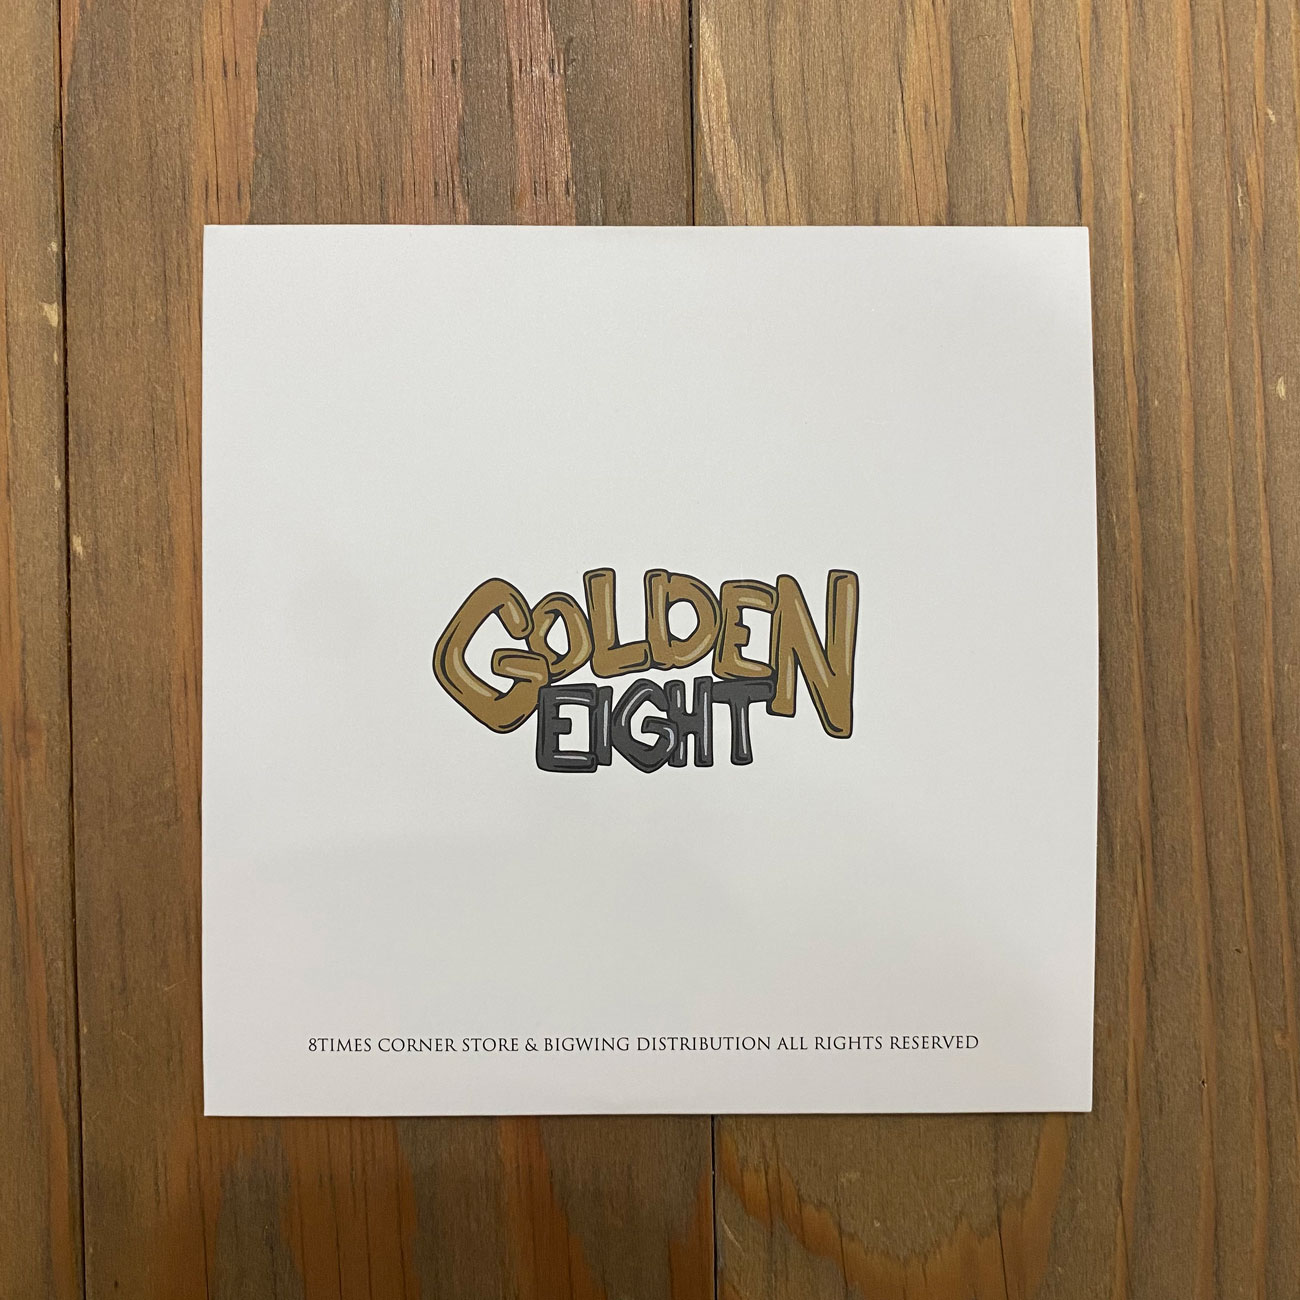 GOLDEN EIGHT DVD